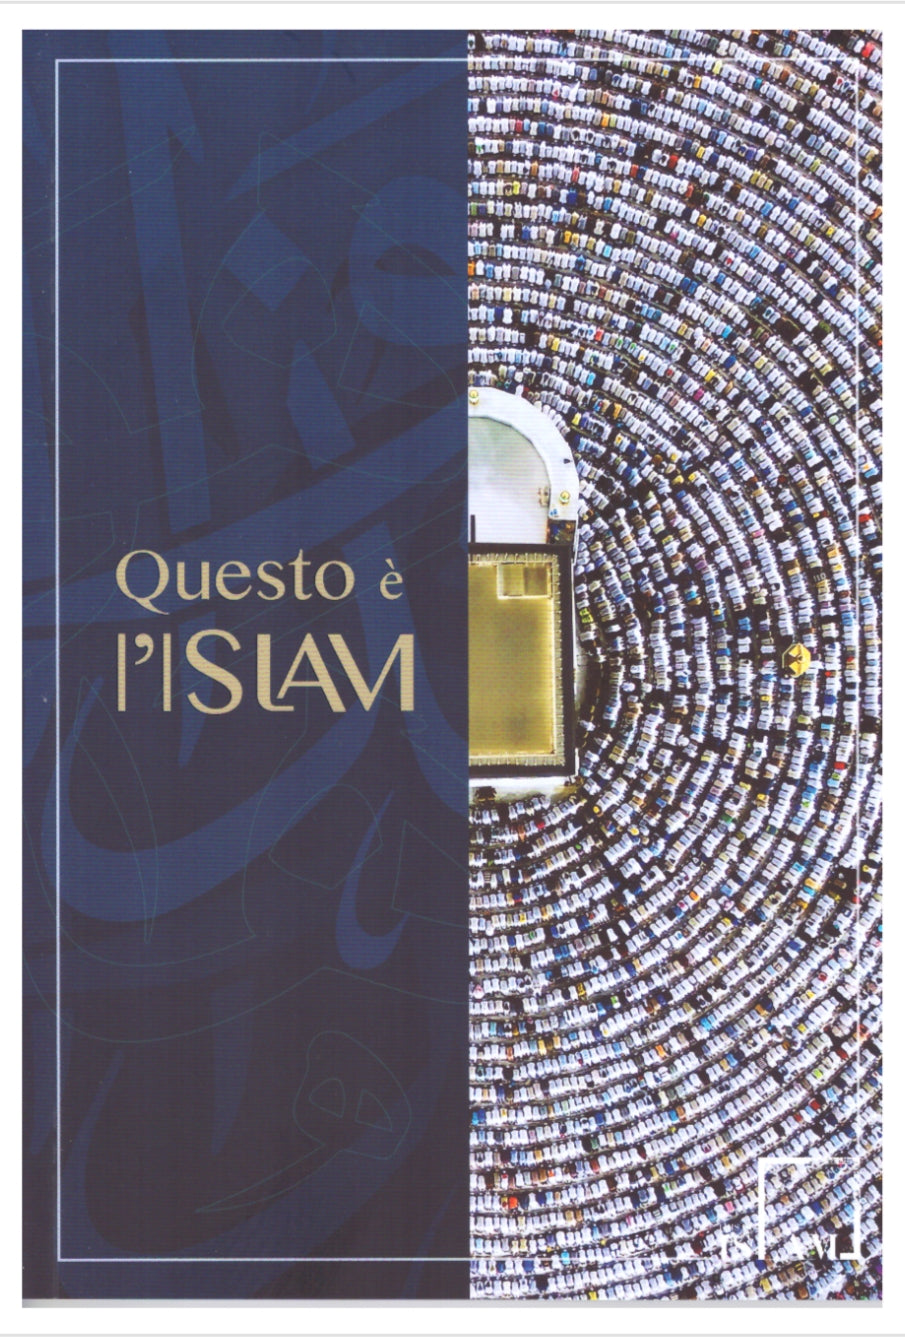 Questo è l'islam - Hijab Paradise- libreria islamica - libro che parla di islam